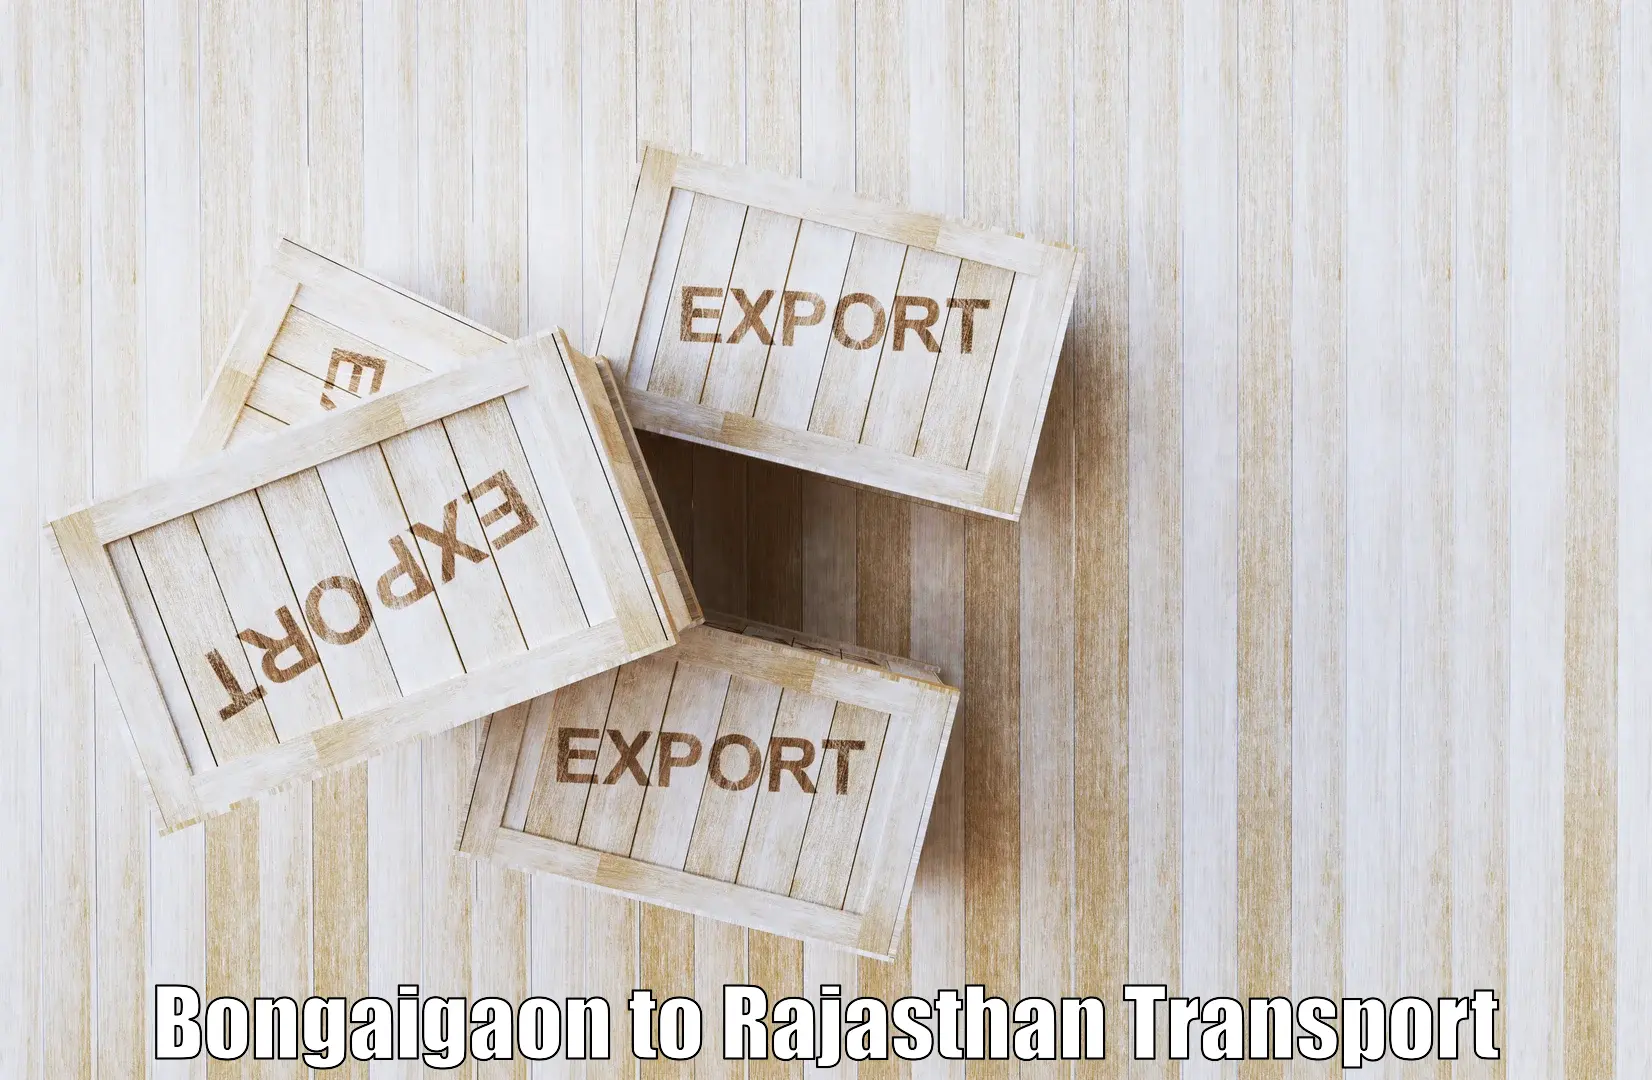 Interstate goods transport Bongaigaon to Nagaur